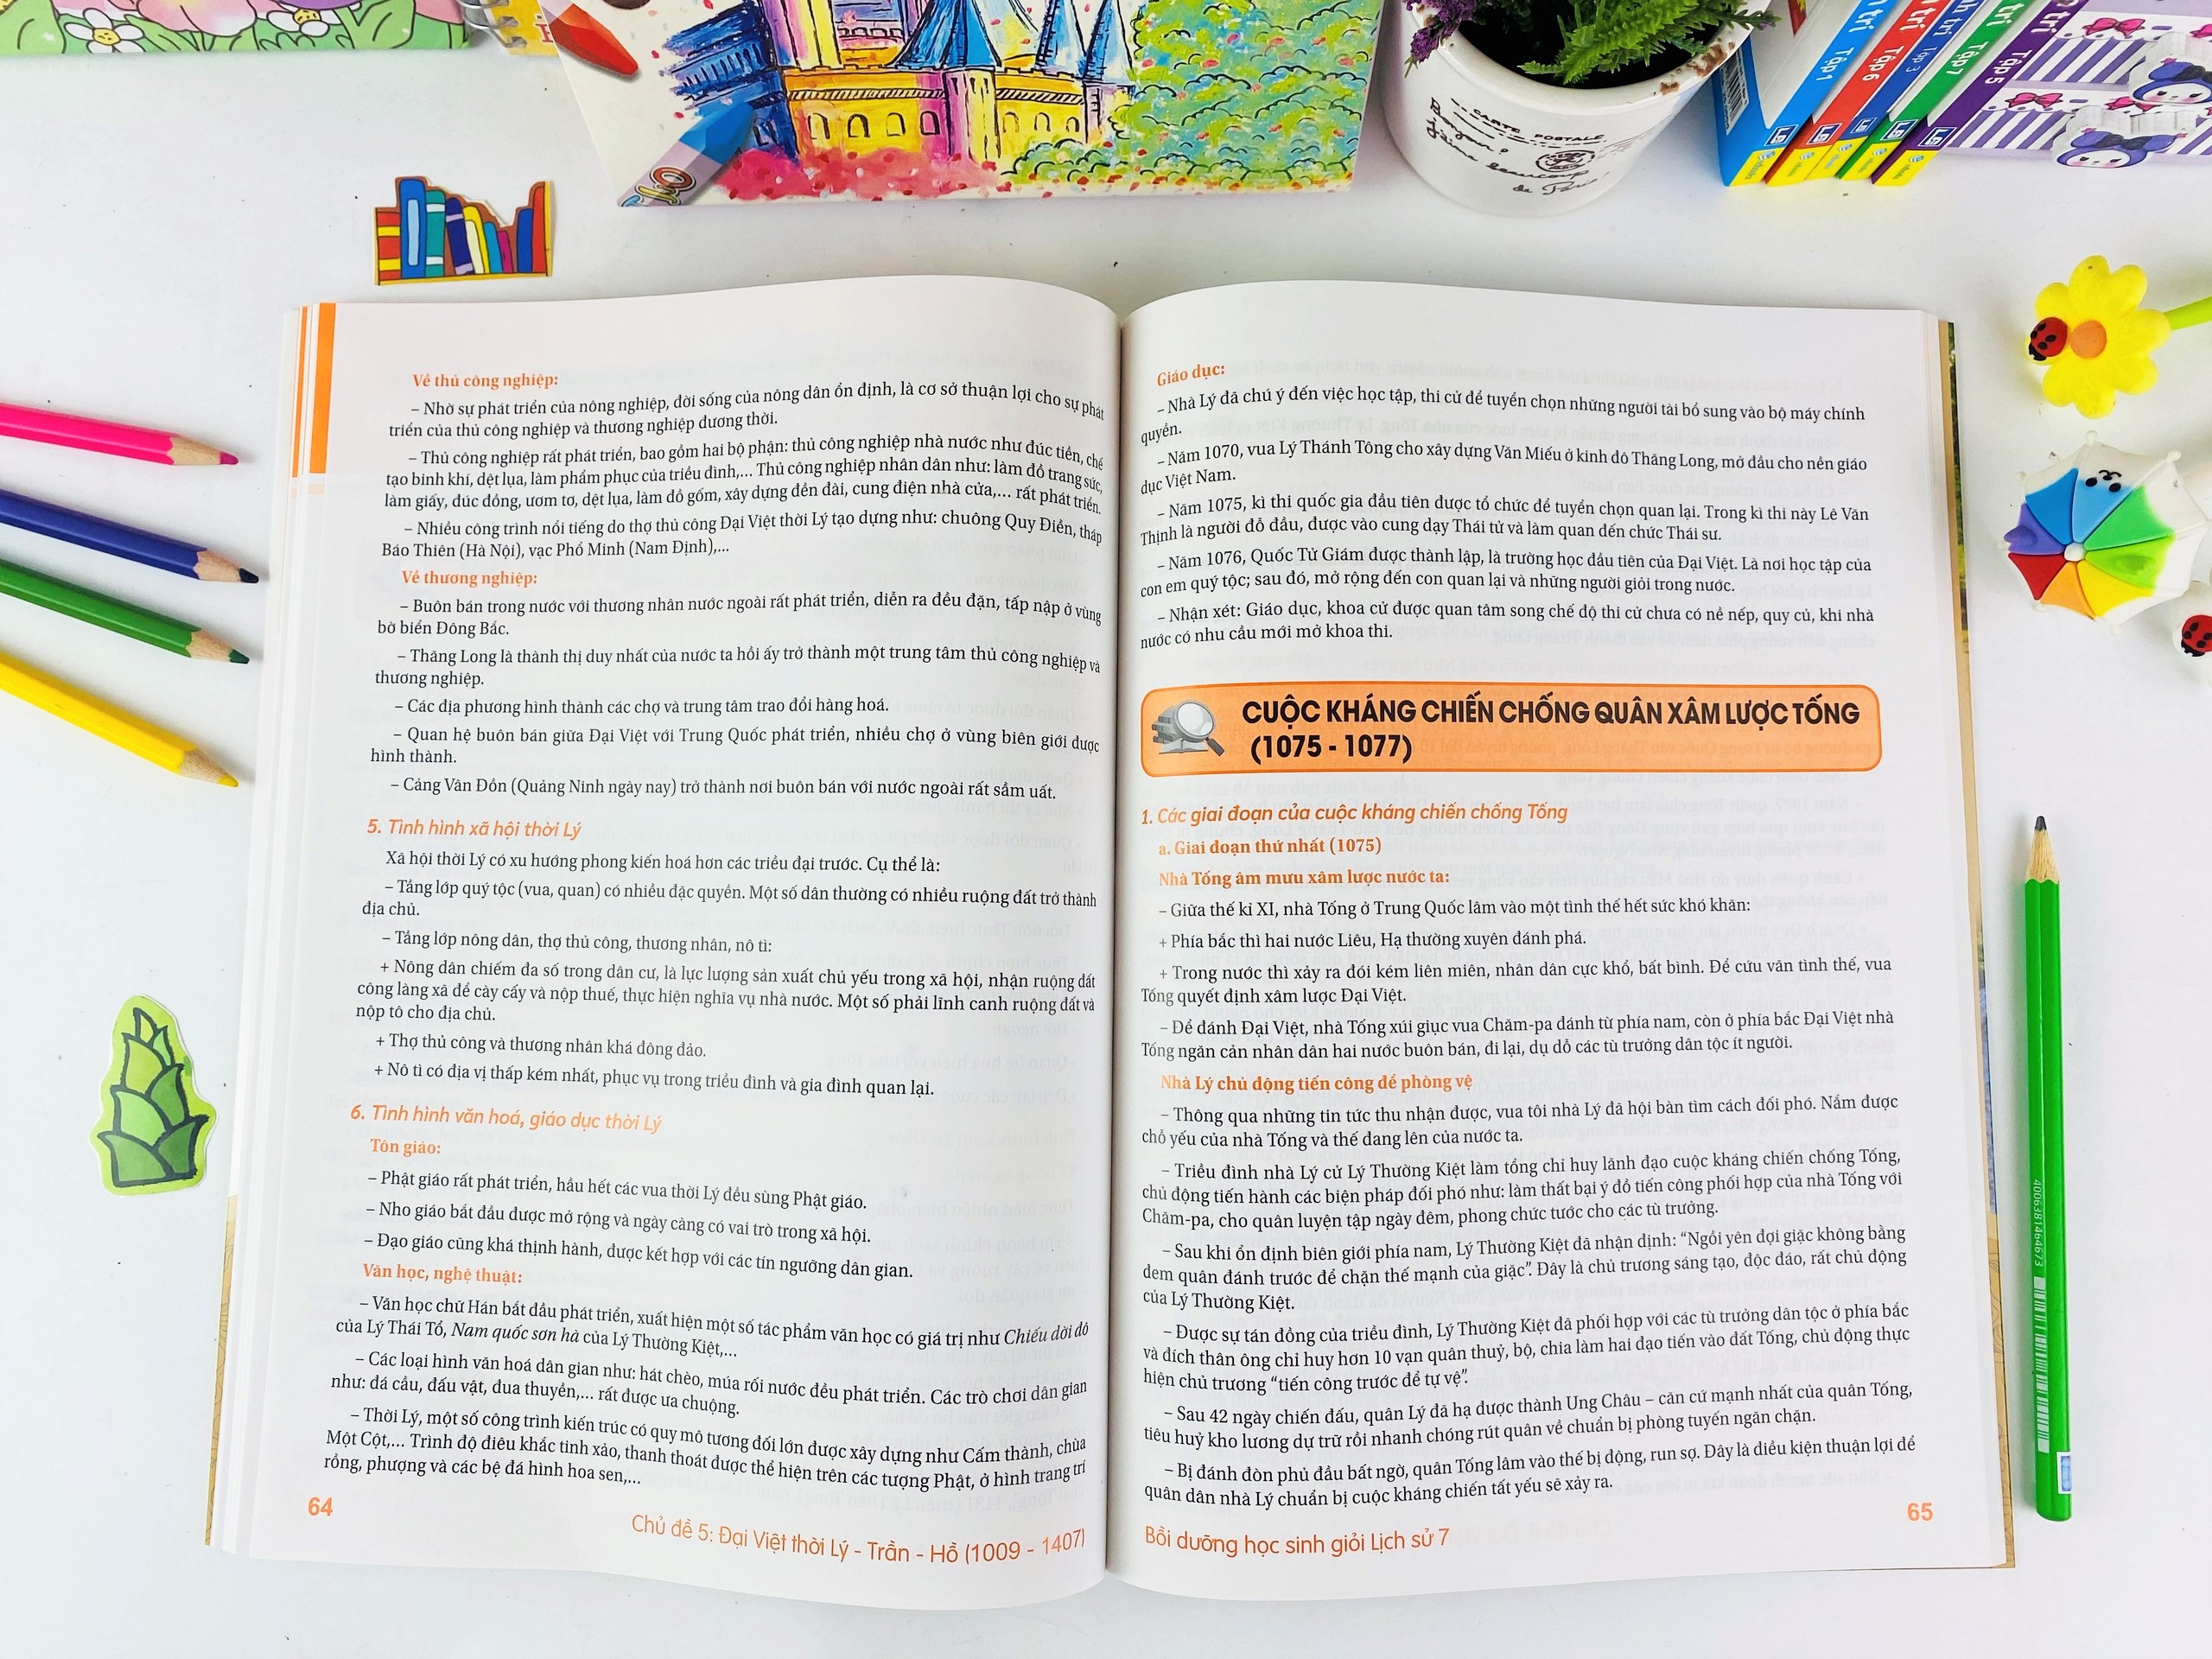 Sách - Bồi Dưỡng Học Sinh Giỏi Lịch Sử 7 (Theo chương trình GDPT mới) - ndbooks